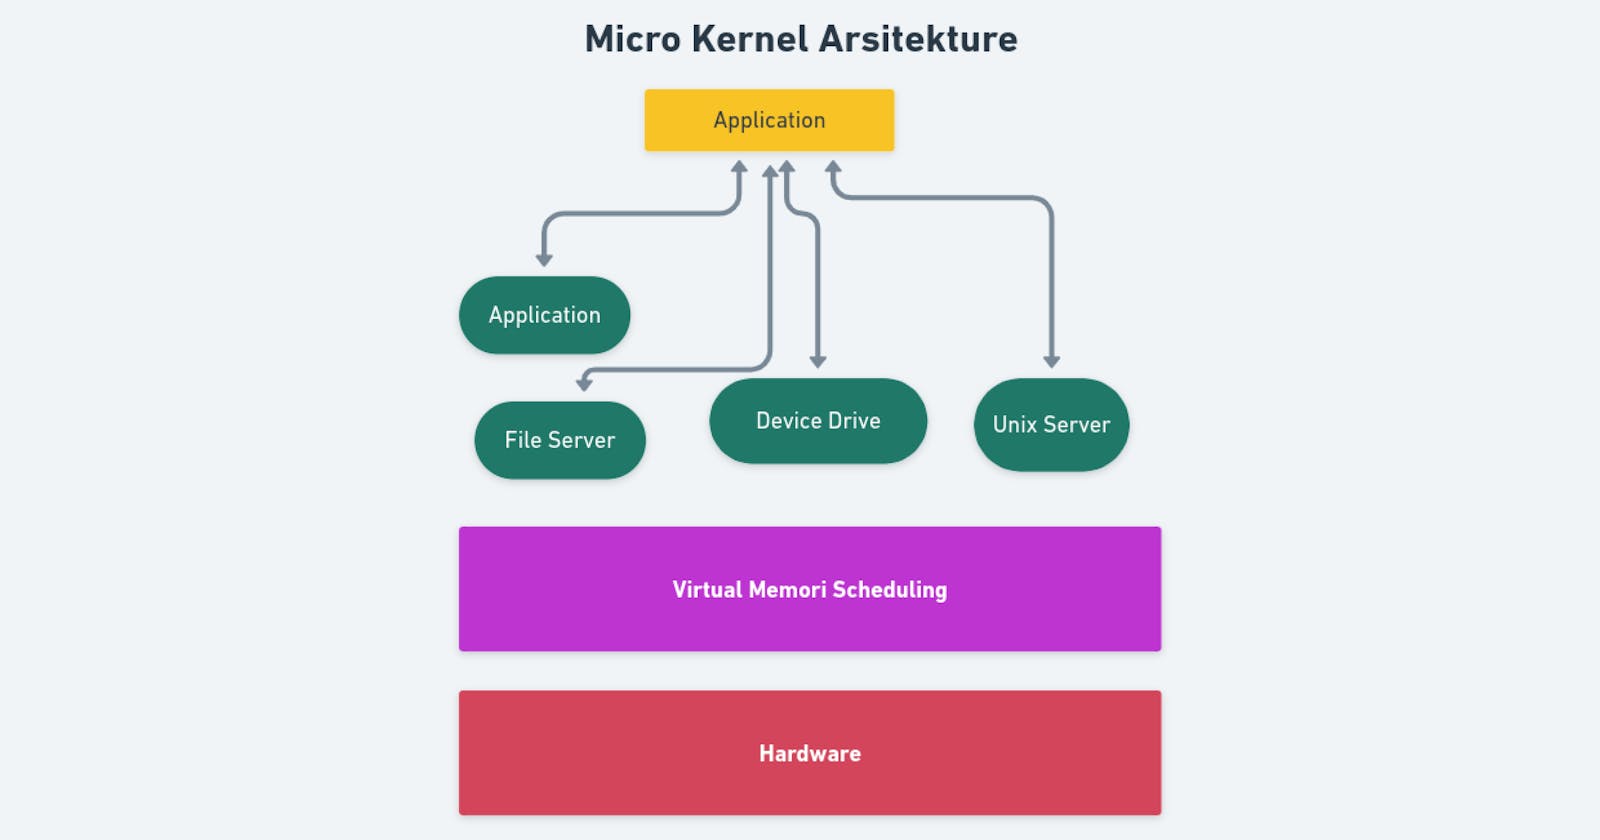 Micro Kernel Architecture